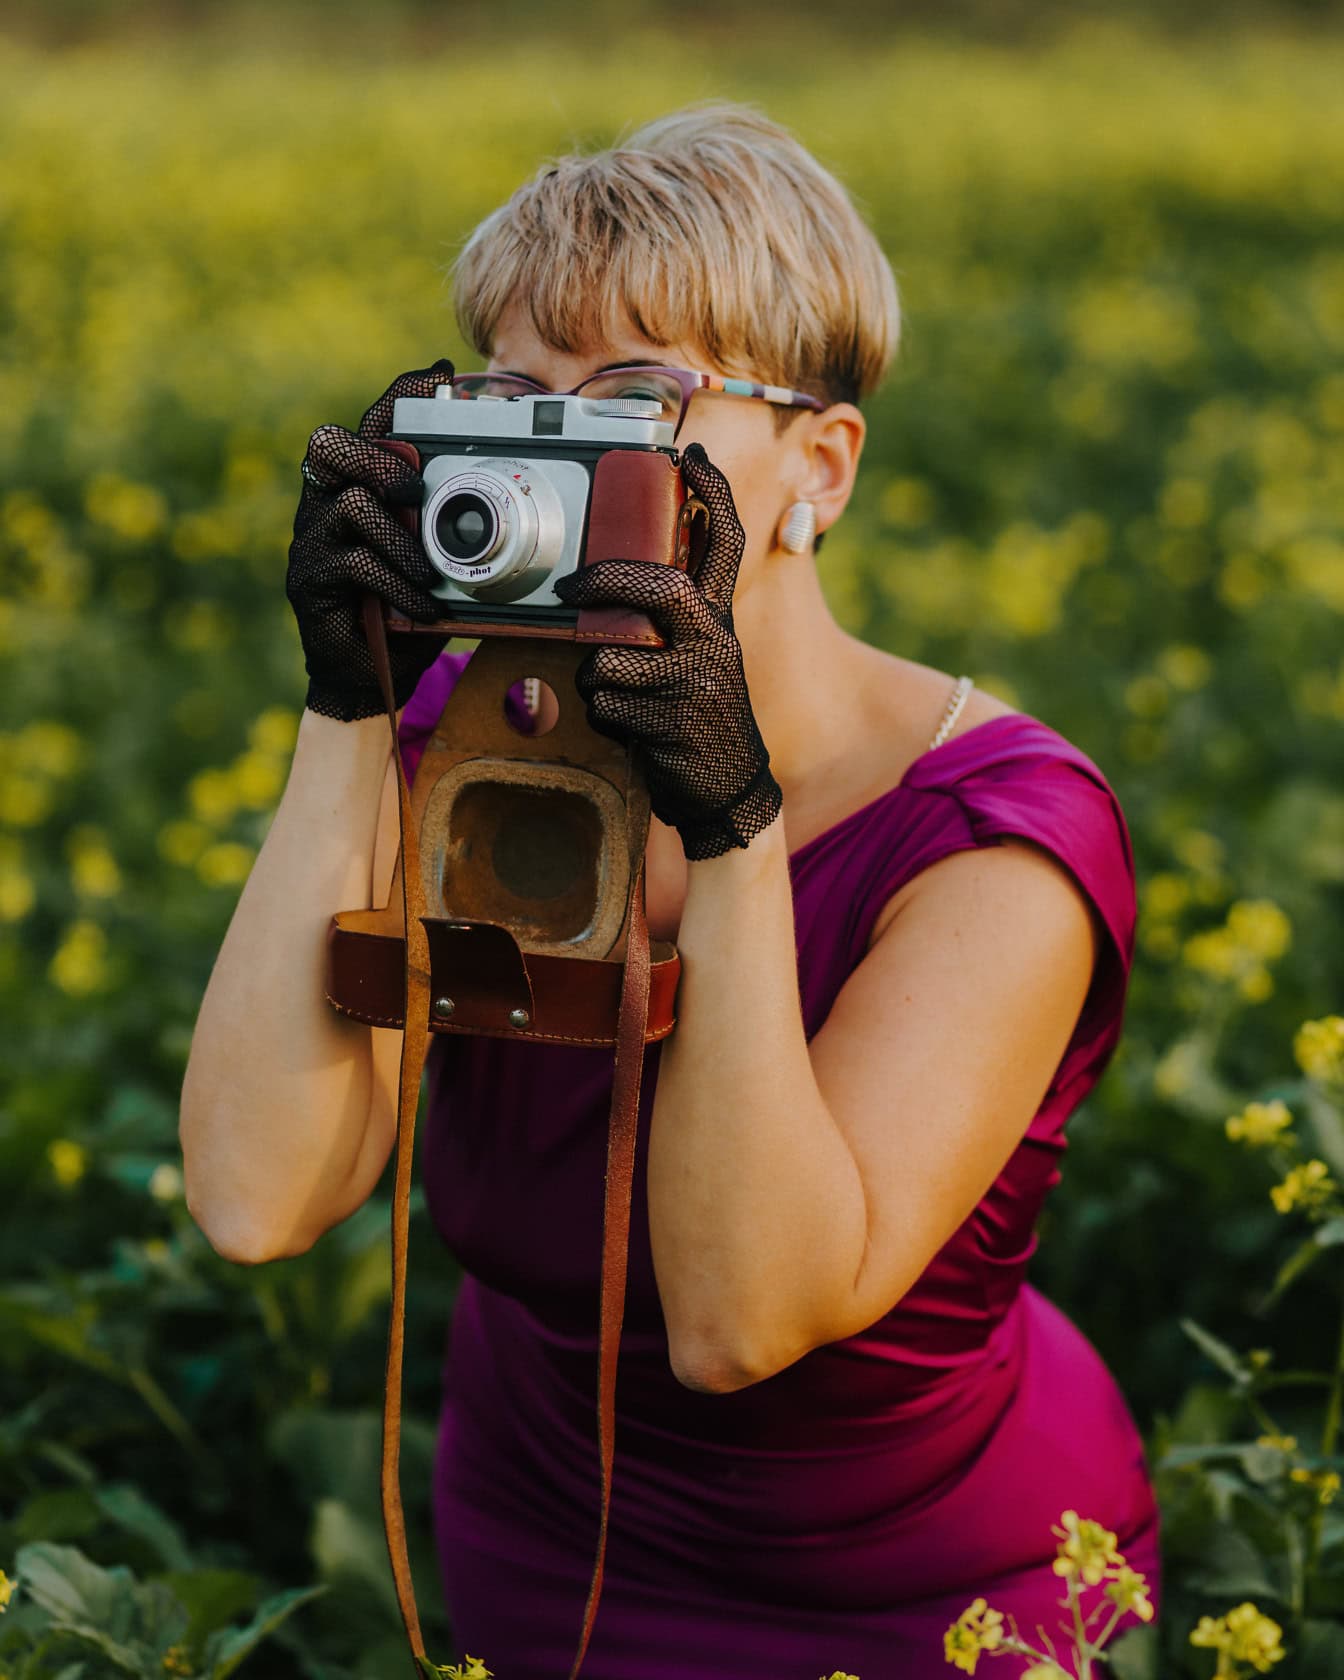 Femeie fotograf plină de farmec, cu coafură blondă scurtă în rochie mov, în timp ce face fotografie cu o cameră foto analogică